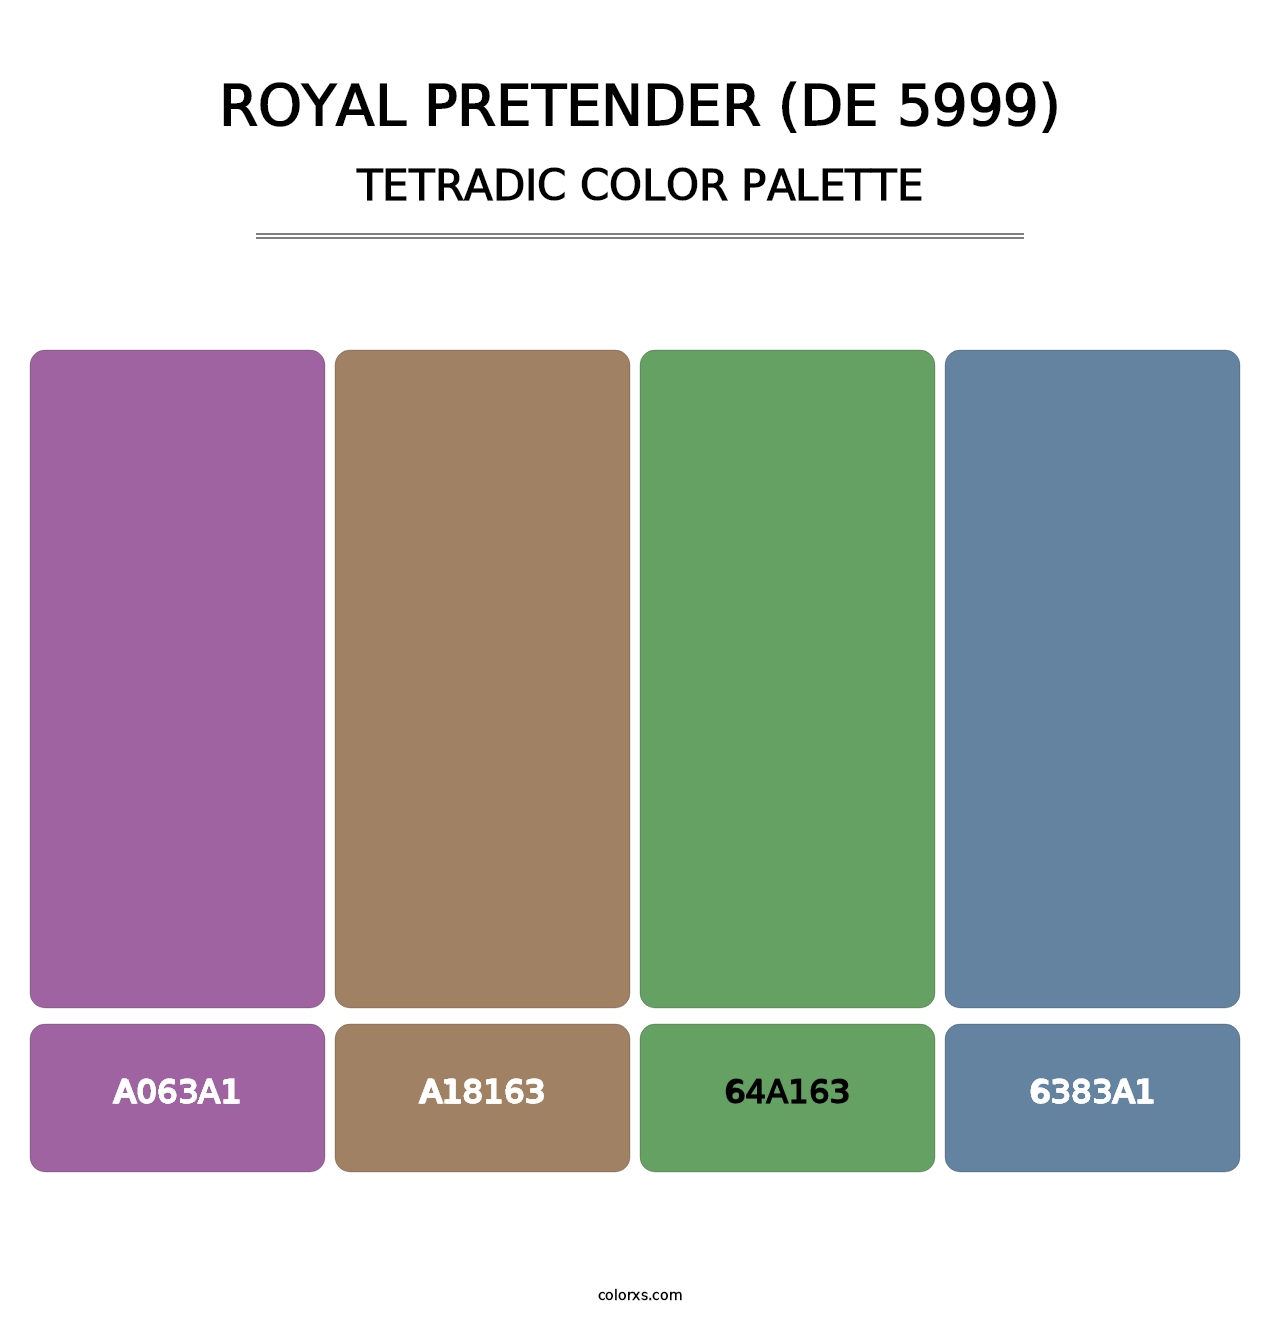 Royal Pretender (DE 5999) - Tetradic Color Palette